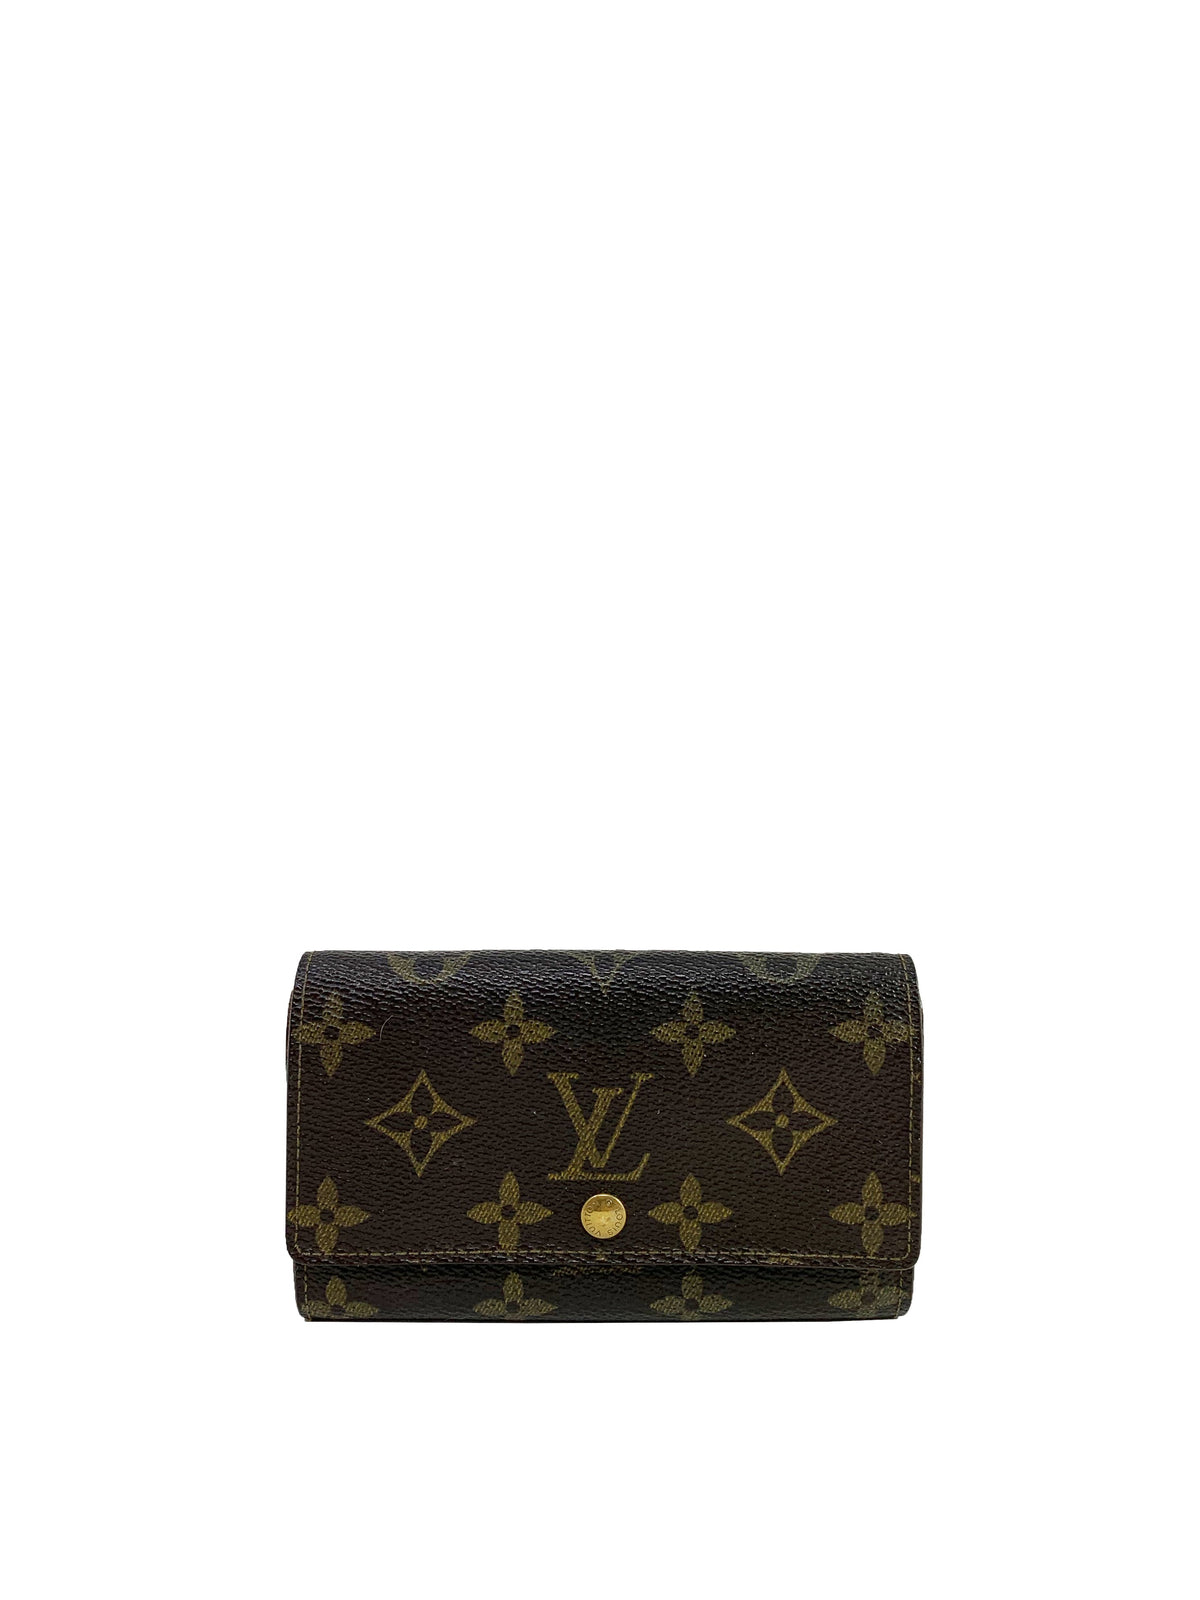 Louis Vuitton Tresor Wallet 